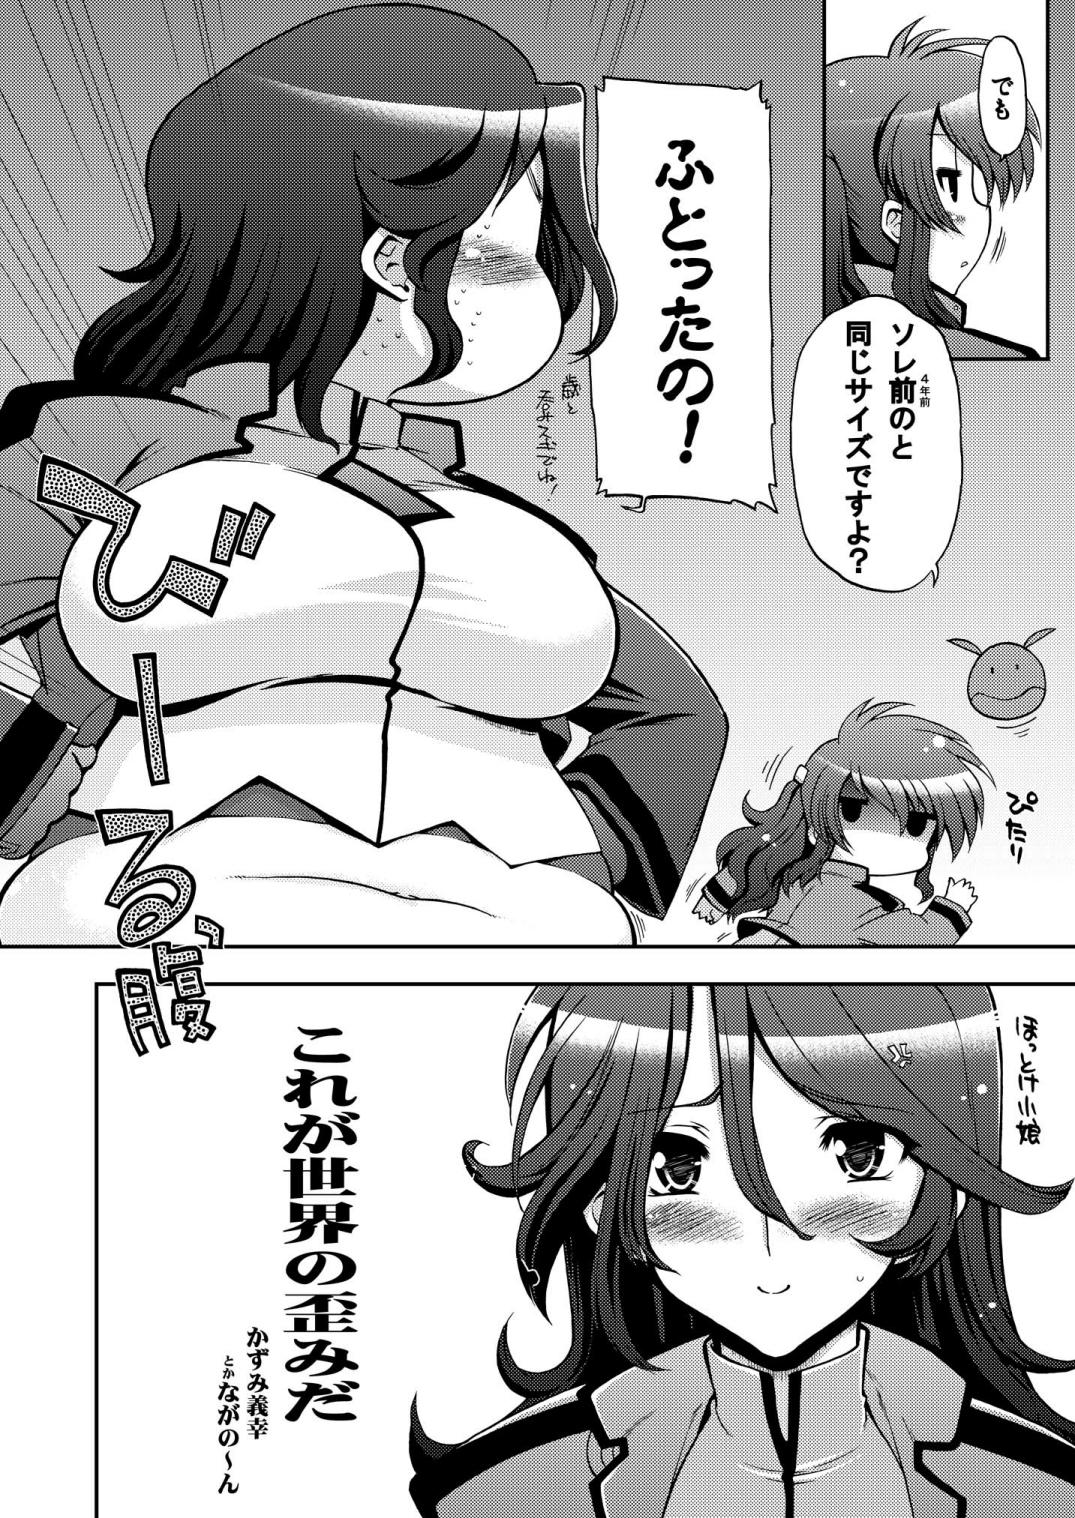 Panocha Korega Sekai no Hizumida - Gundam 00 Step Sister - Page 5